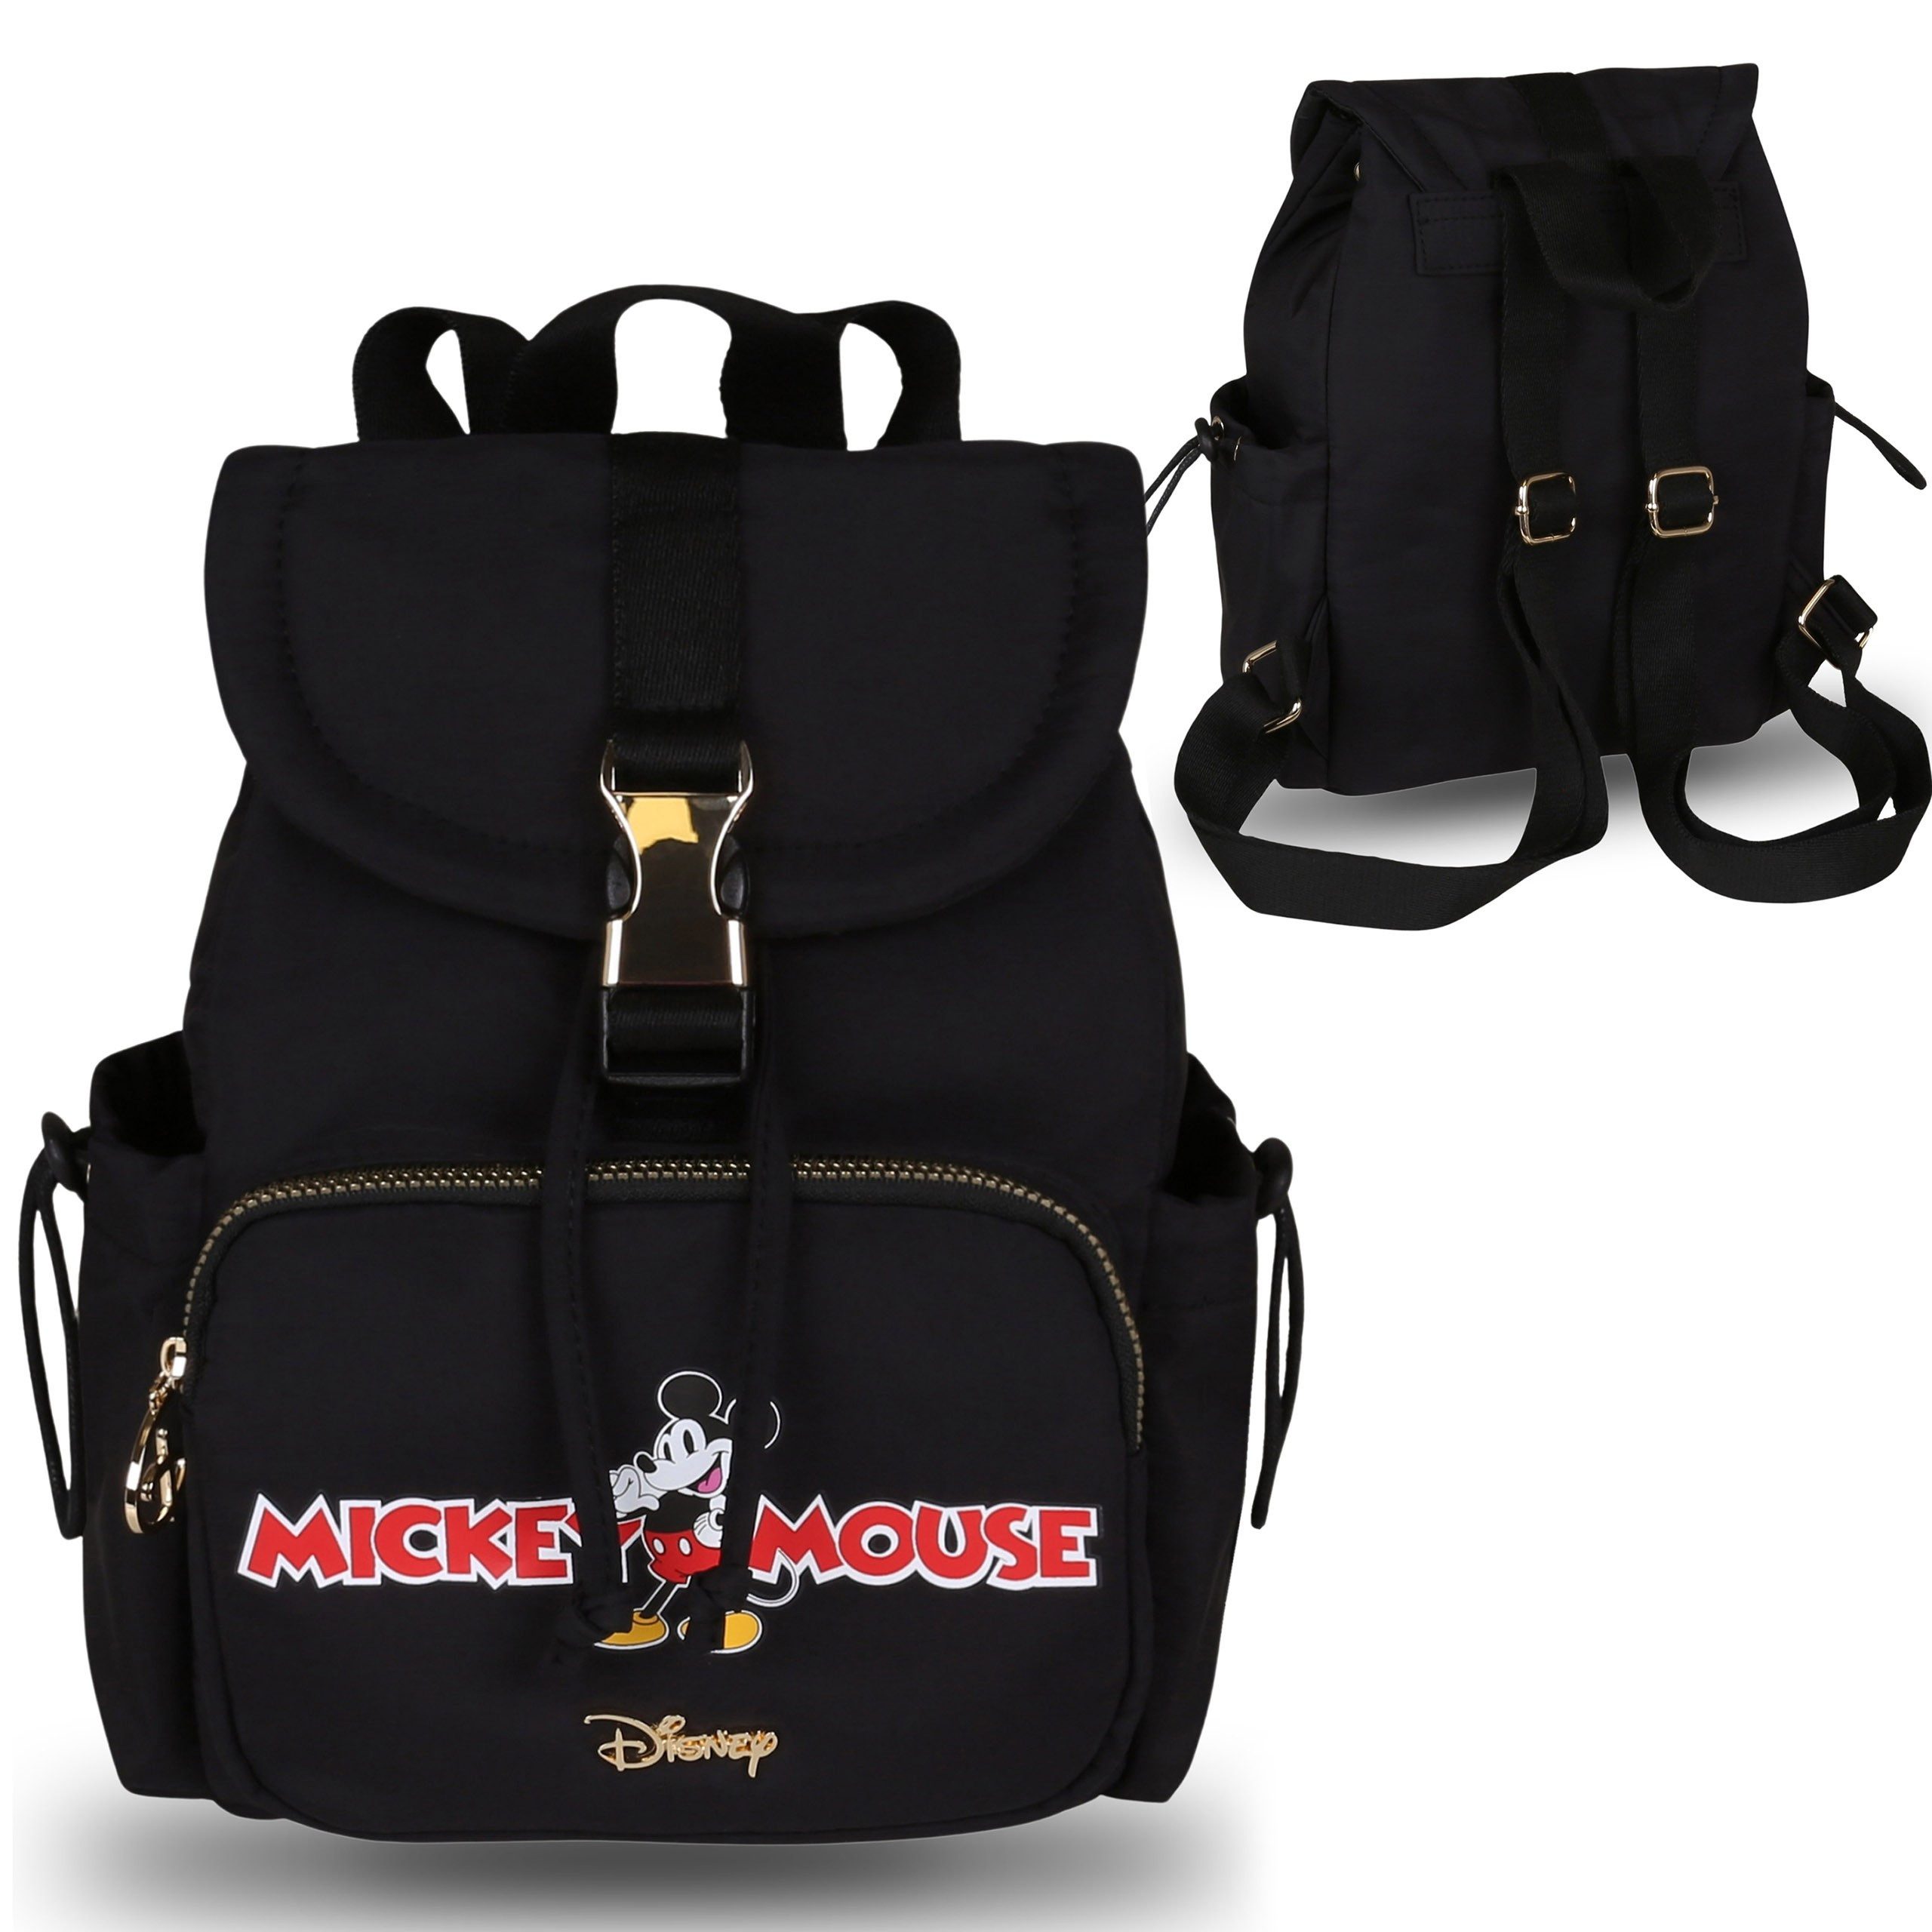 Sarcia.eu Rucksack Mickey Mouse Disney Rucksack schwarz, kleiner Damenrucksack 28x15x23cm